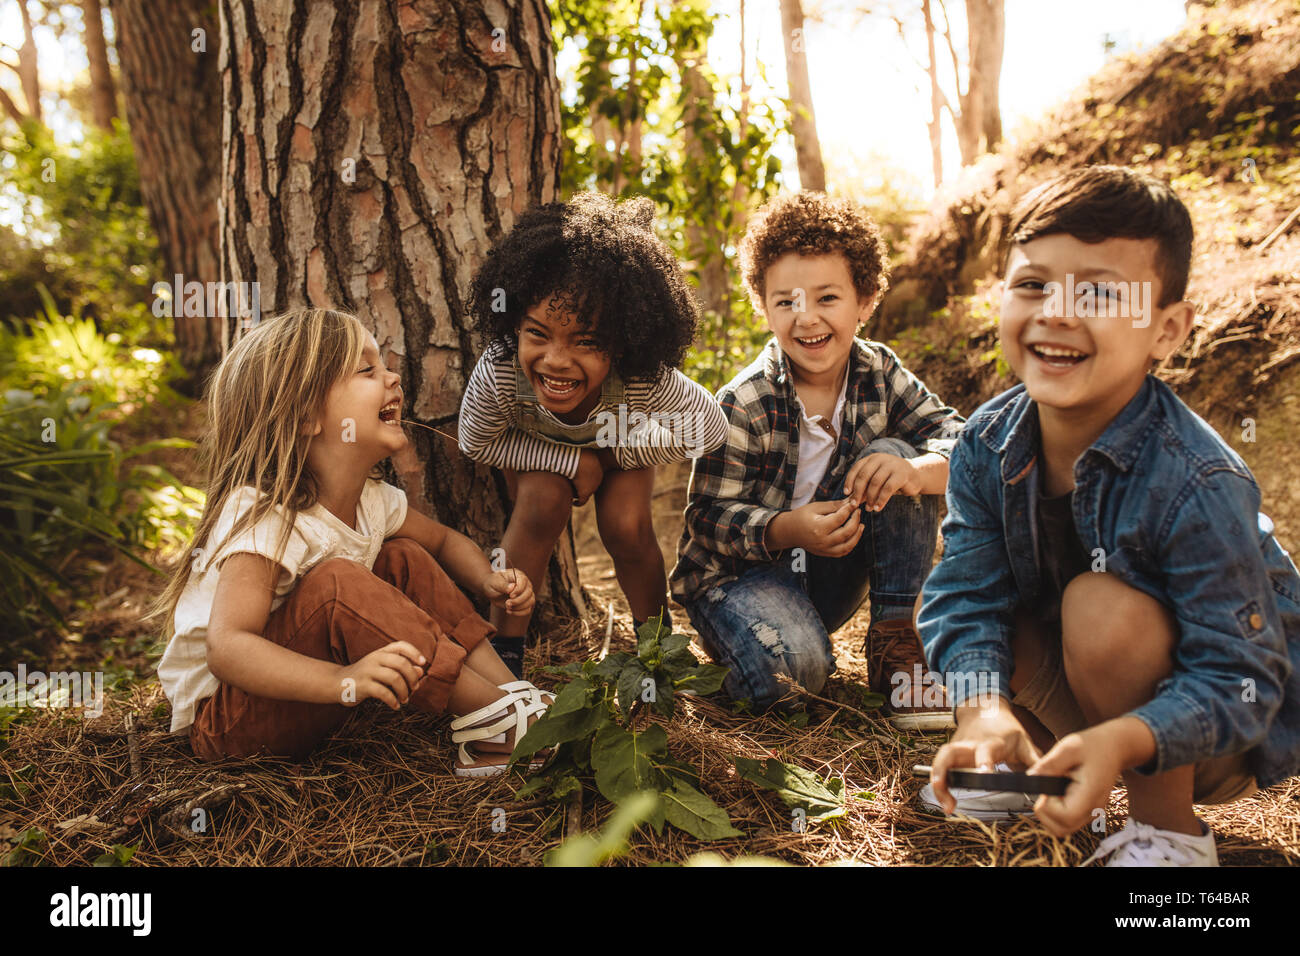 Grupo de lindos hijos sentados juntos en el bosque y mirando a la cámara. Cute niños jugando en los bosques. Foto de stock